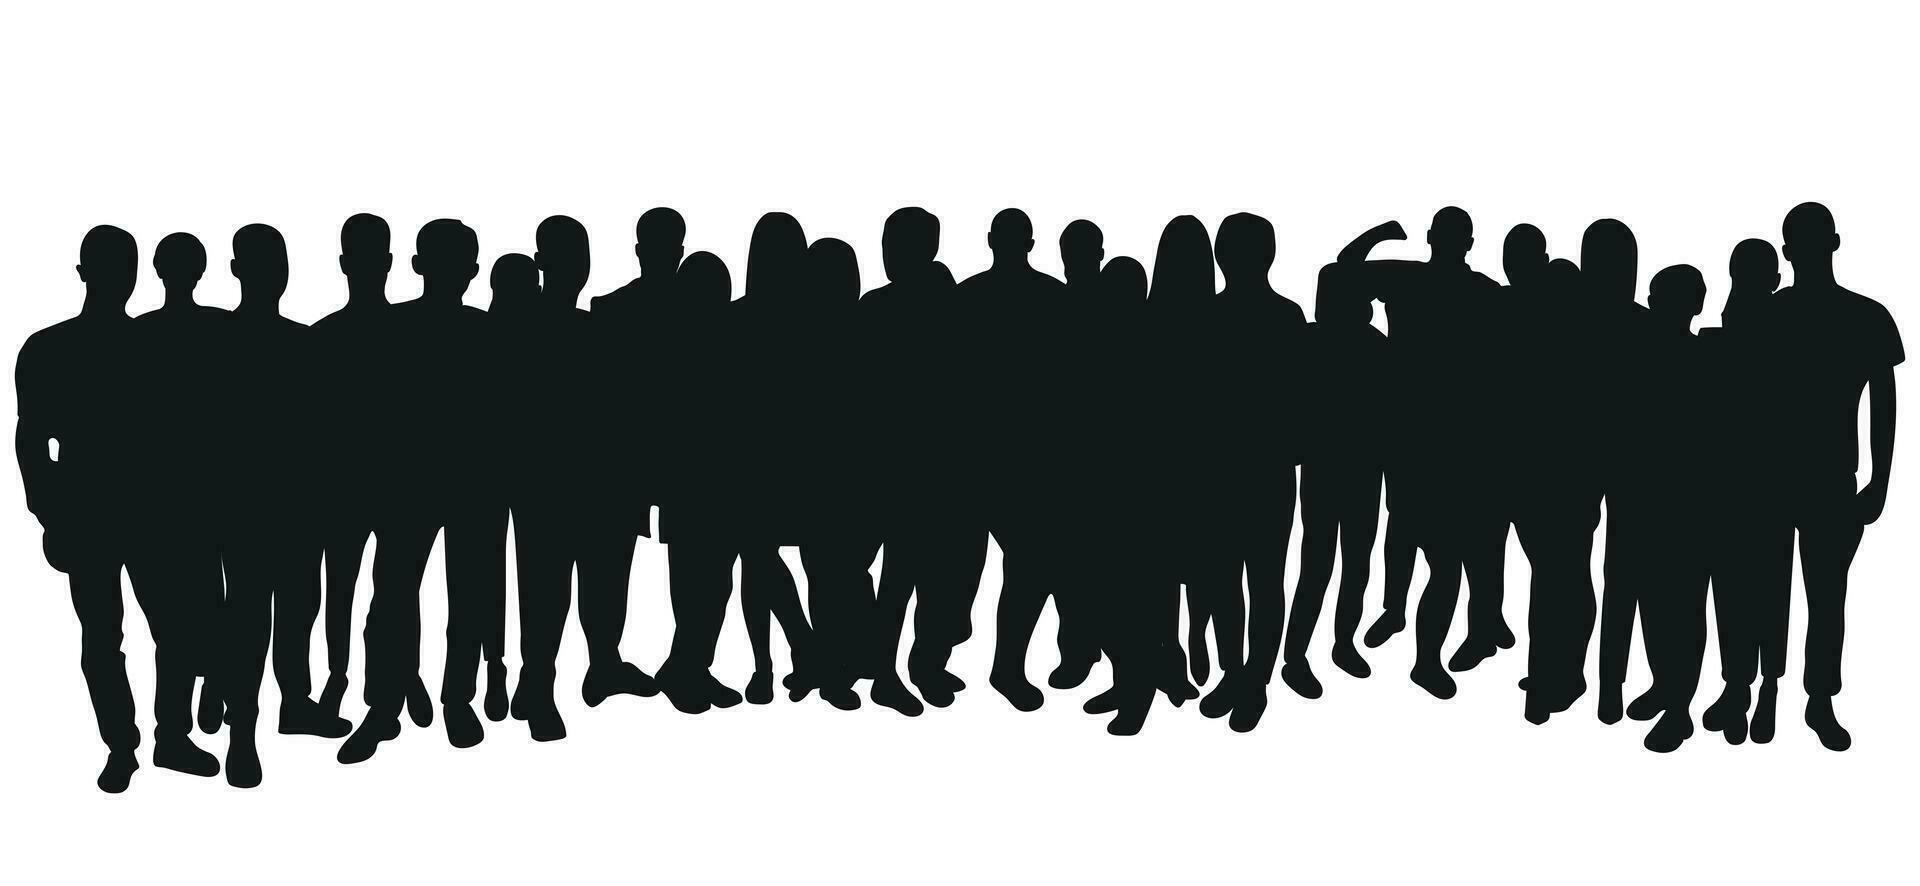 Bild skizzieren Gliederung von das Silhouette von das Menge, Gruppe von Personen. Jugend, Studenten, Geschäft, Arbeitskräfte, Publikum, Warteschlange, Migration, Flüchtling vektor